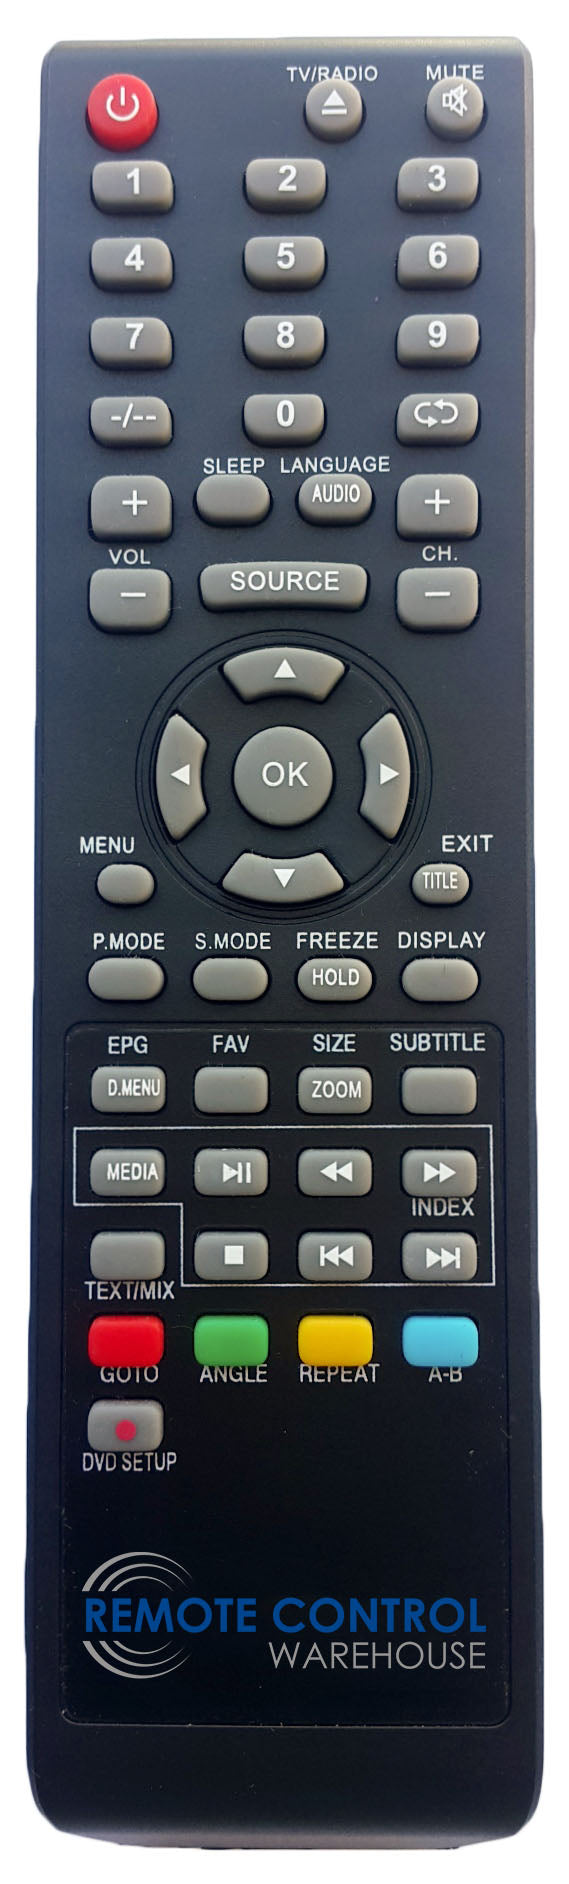 AKAI REPLACEMENT REMOTE CONTROL - AK552016UHD AK-552016UHD LED TV - Remote Control Warehouse